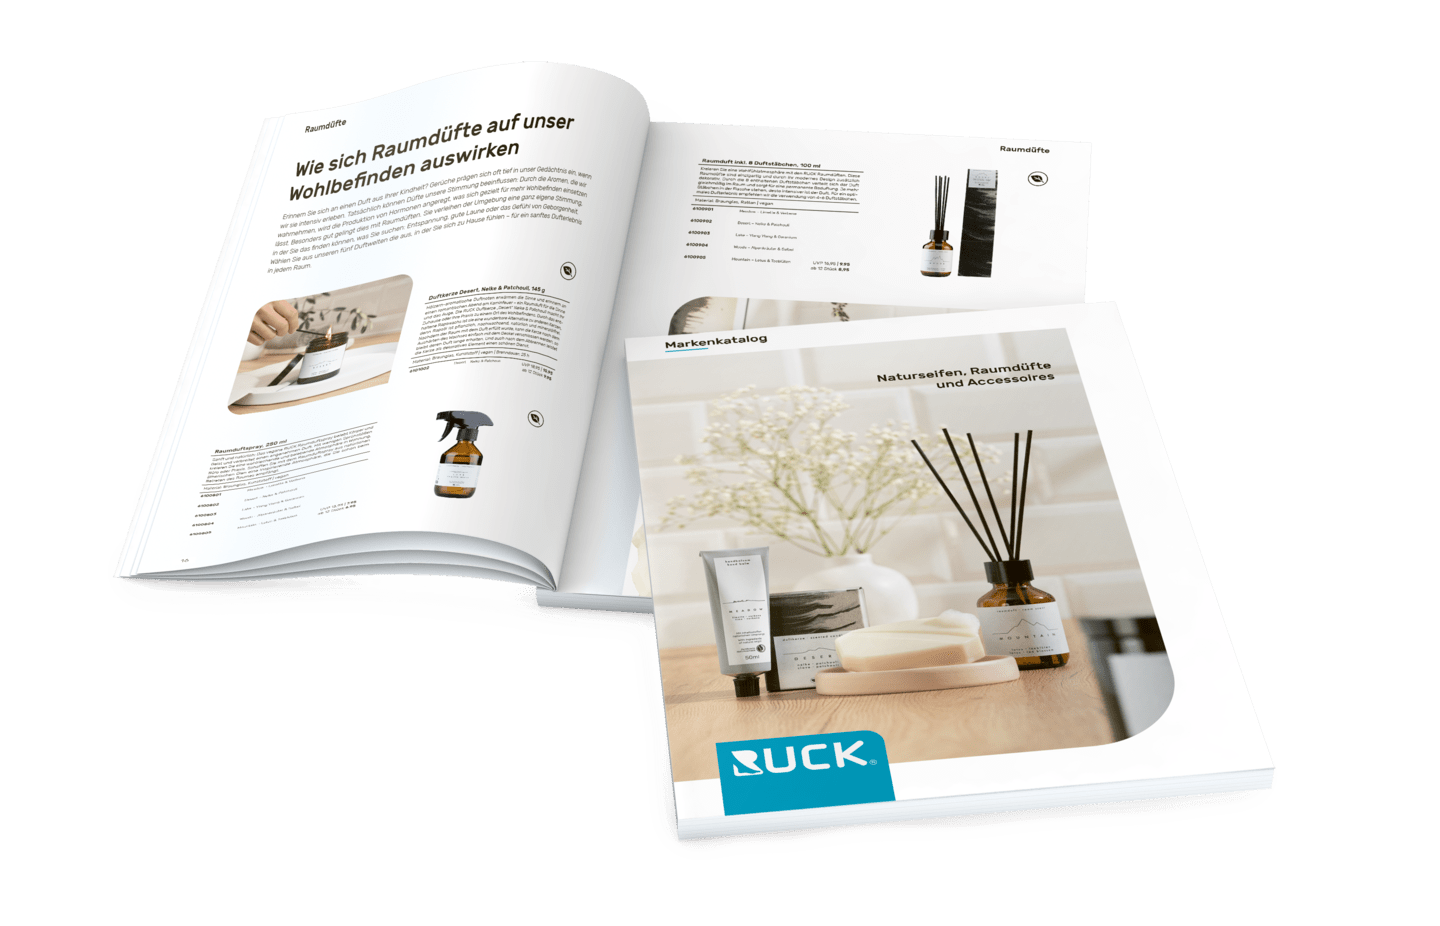 RUCK - Markenkatalog Naturseifen, Raumdüfte und Accessoires